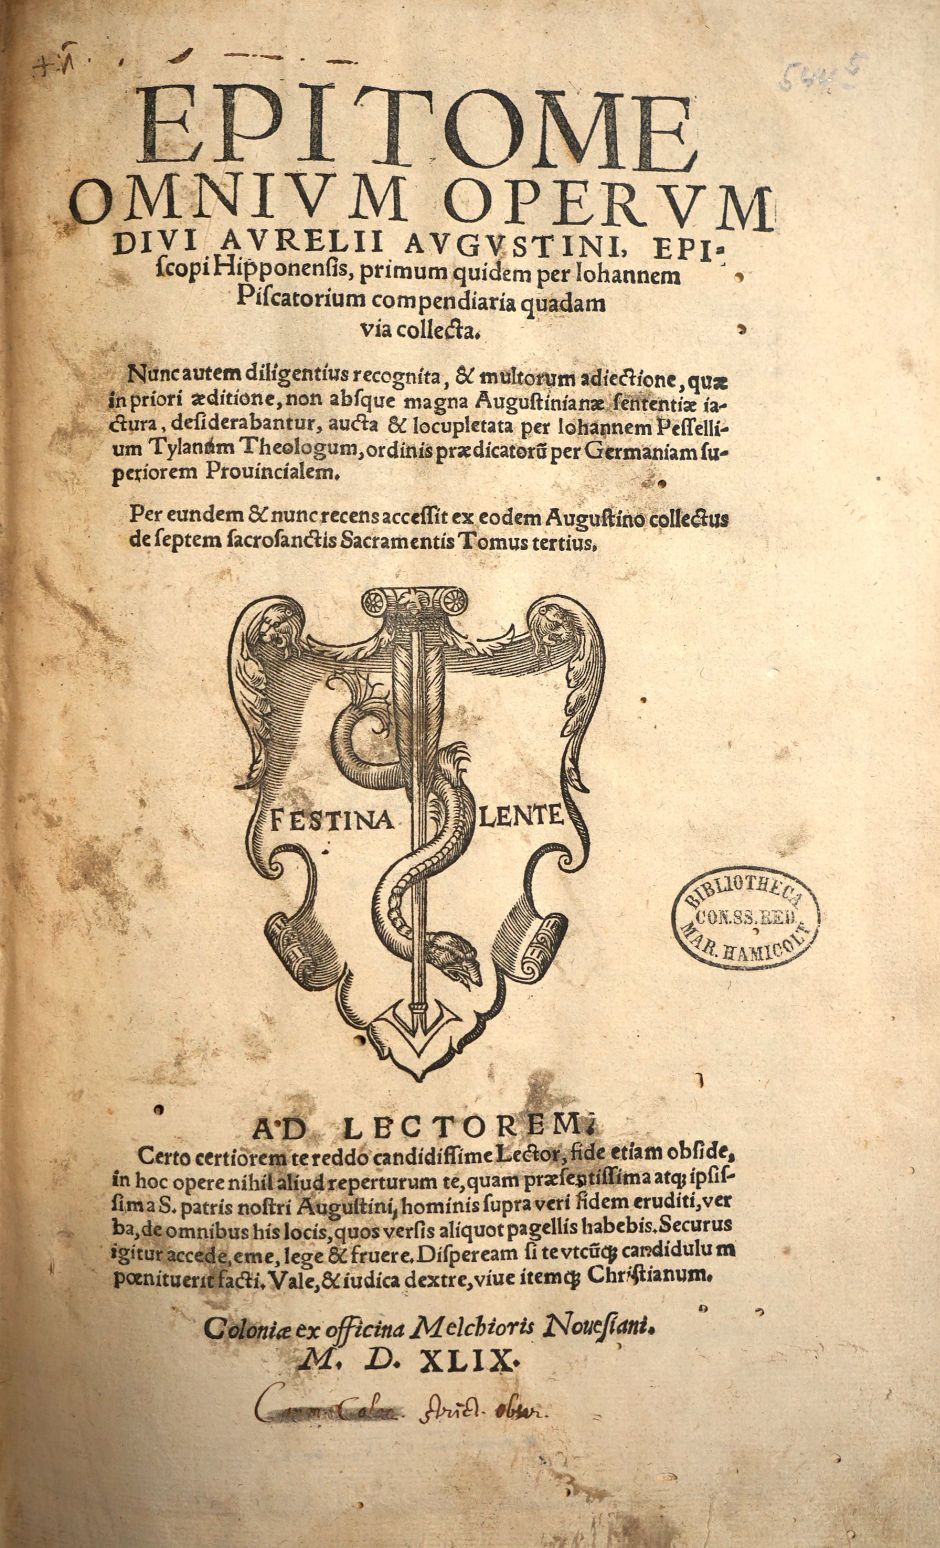 Lot 1052, Auction  115, Augustinus, Aurelius, Epitome omnium operum